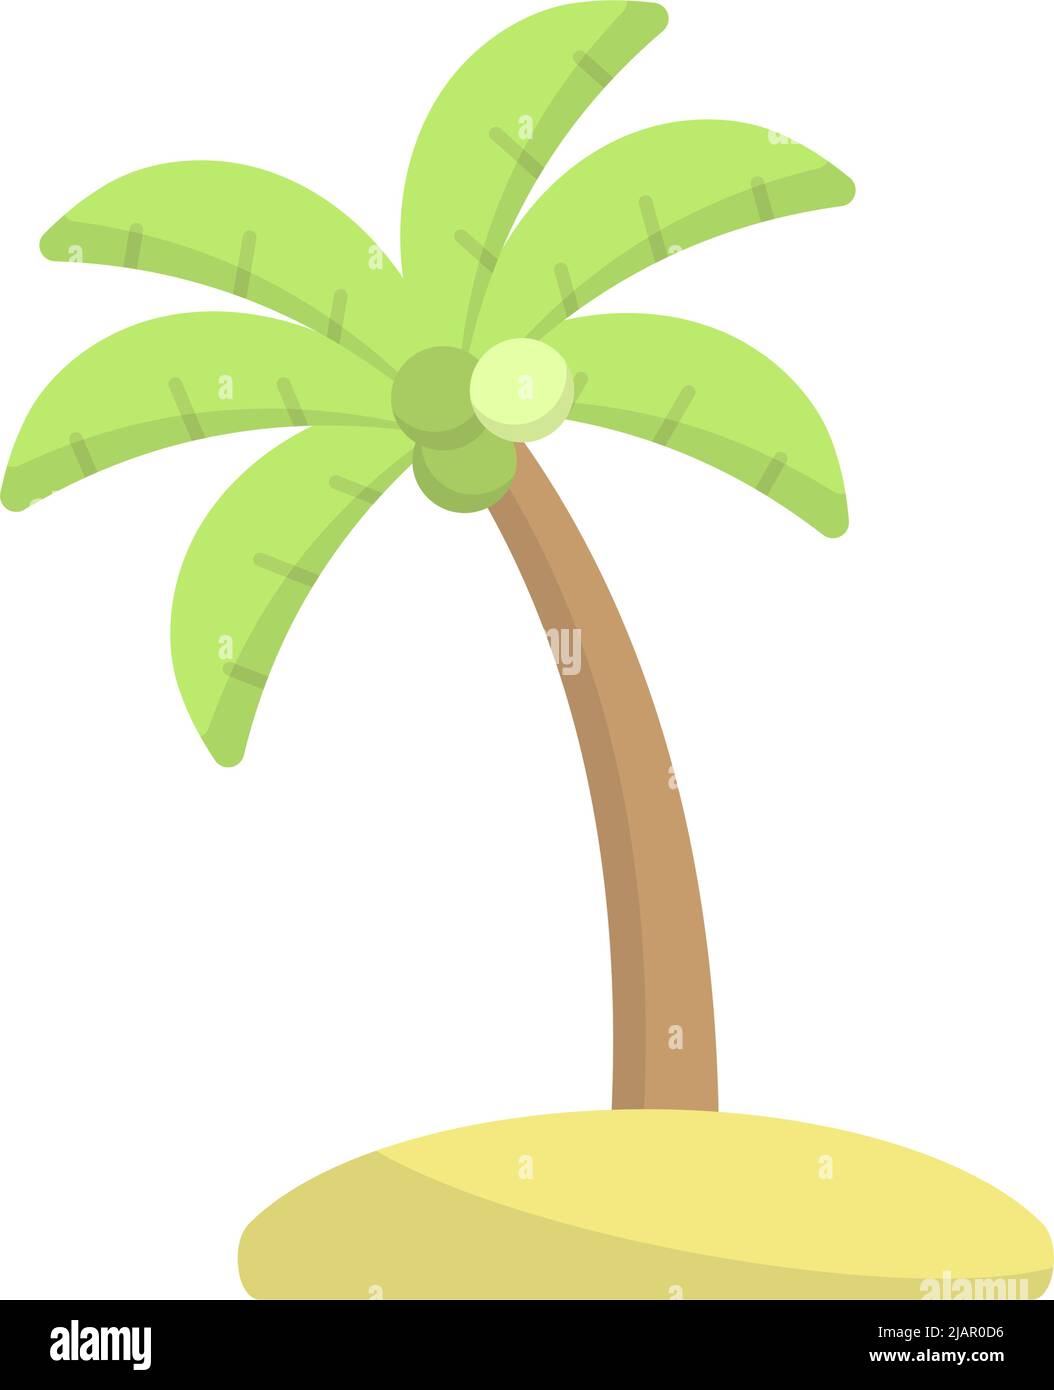 coconut-tree-icon-design-template-vector-illustration-stock-vector